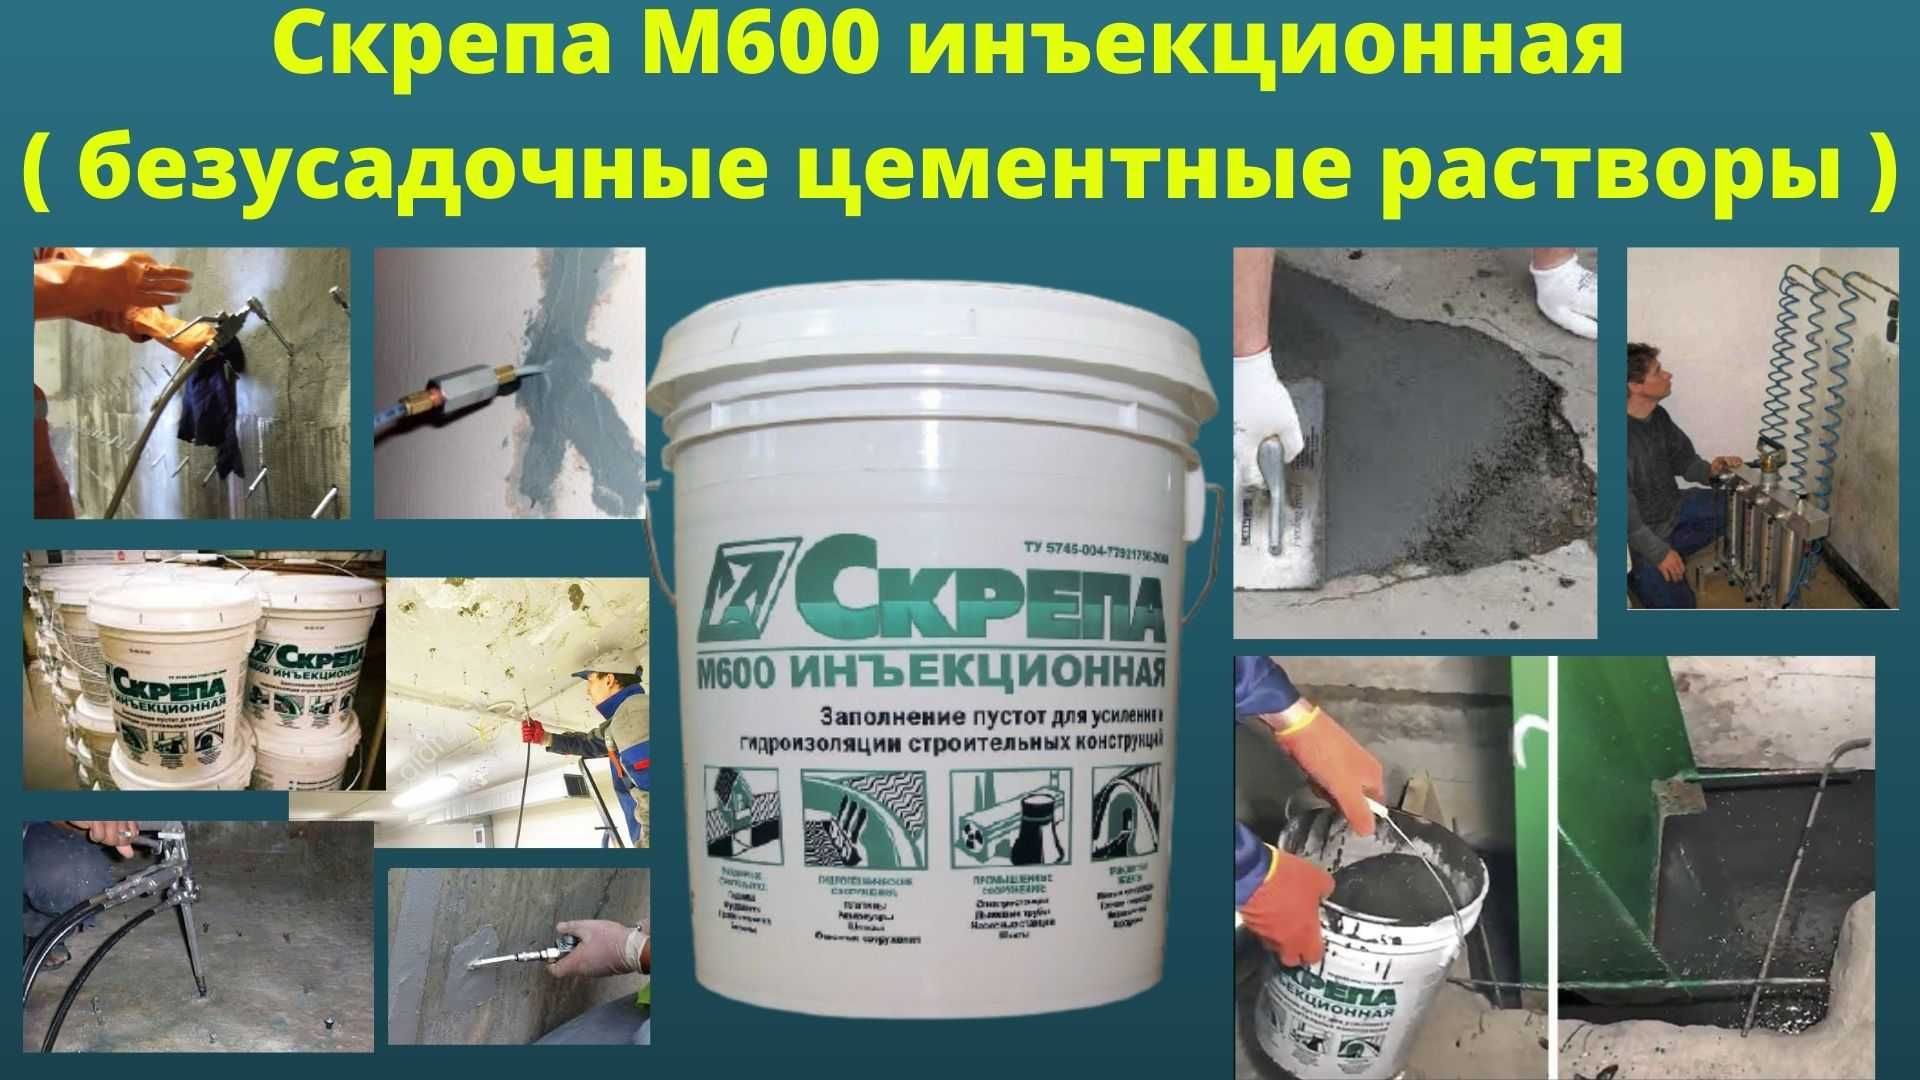 безусадочные цементные растворы  ( смеси ) Скрепа М600 Инъекционная.